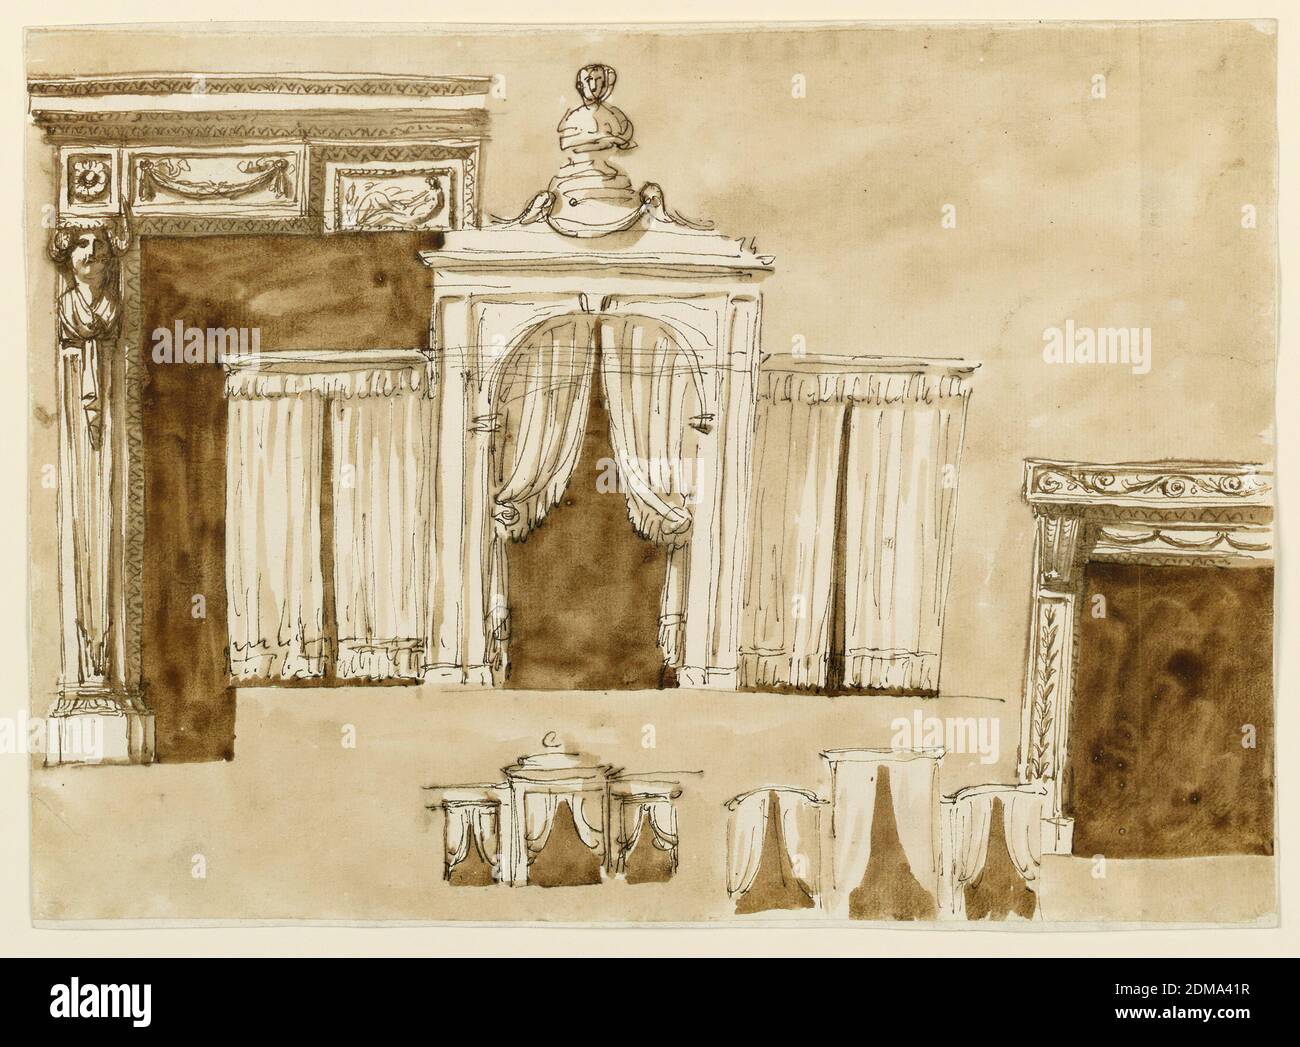 Bettennische und Kaminsims, Giuseppe Barberi, italienisch, 1746–1809, Feder und braune Tinte, Pinsel und braune Wäsche auf Papier, ausgekleidet, links: Die Hälfte eines Kaminsims mit einer Gaine mit einer weiblichen Büste, die den Fries der Entablatur stützt. Der Fries ist in Paneele unterteilt, die zentrale wird von der gleichen Form wie die Öffnung eingerahmt. Mitte: Die Erhebung des dreigliedrigen Eingangs zu einer Nische, die beiden seitlichen werden durch Vorhänge geschlossen. Auf dem mittleren steht eine Büste. Rechts: Die linke Hälfte eines Mantelstückes, mit einer Konsole, die die Entablatur unterstützt. Stockfoto